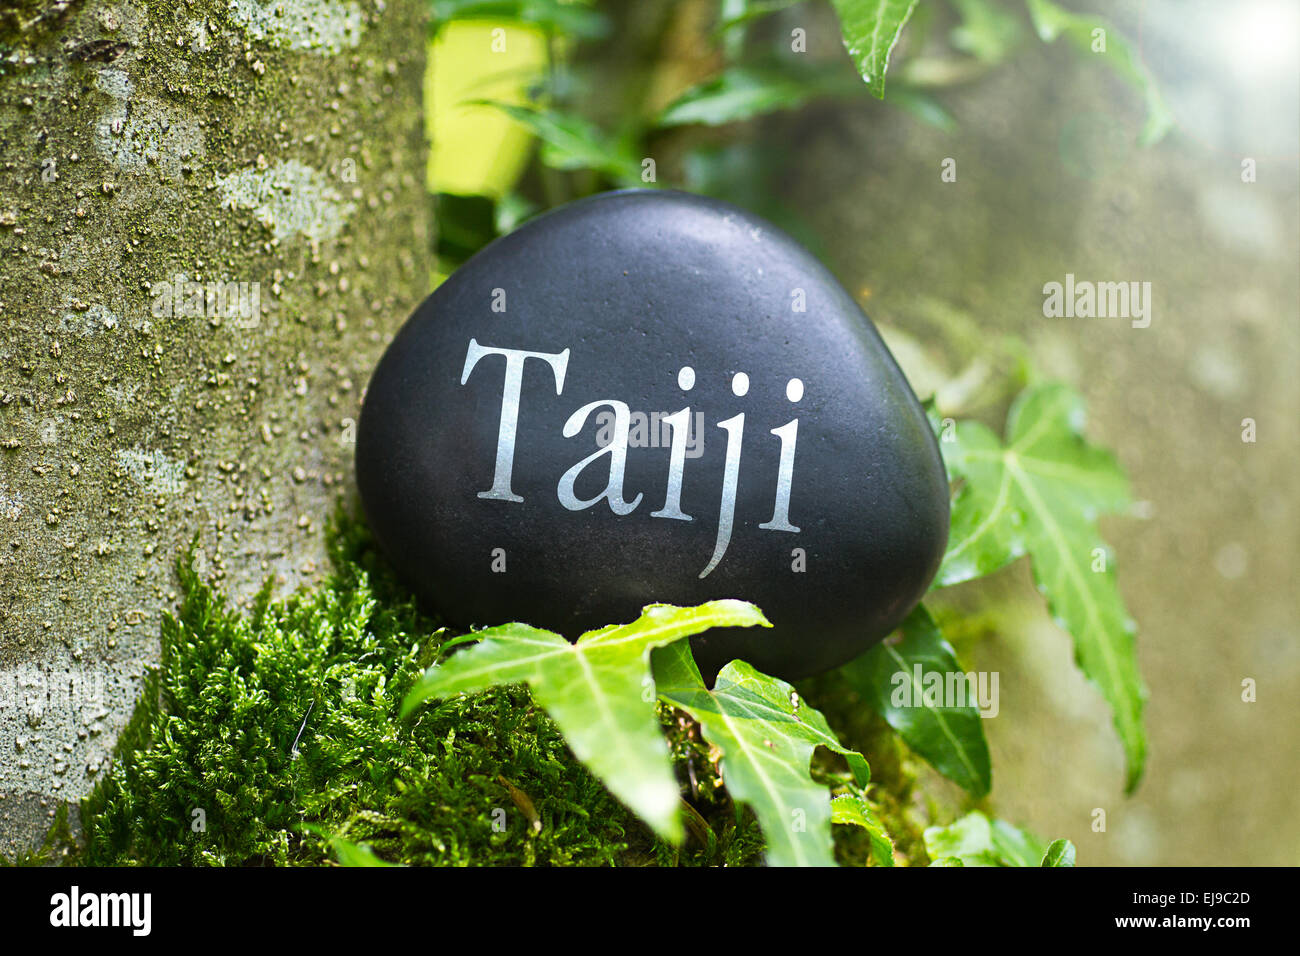 Le mot "Taiji" sur une pierre dans la nature Banque D'Images